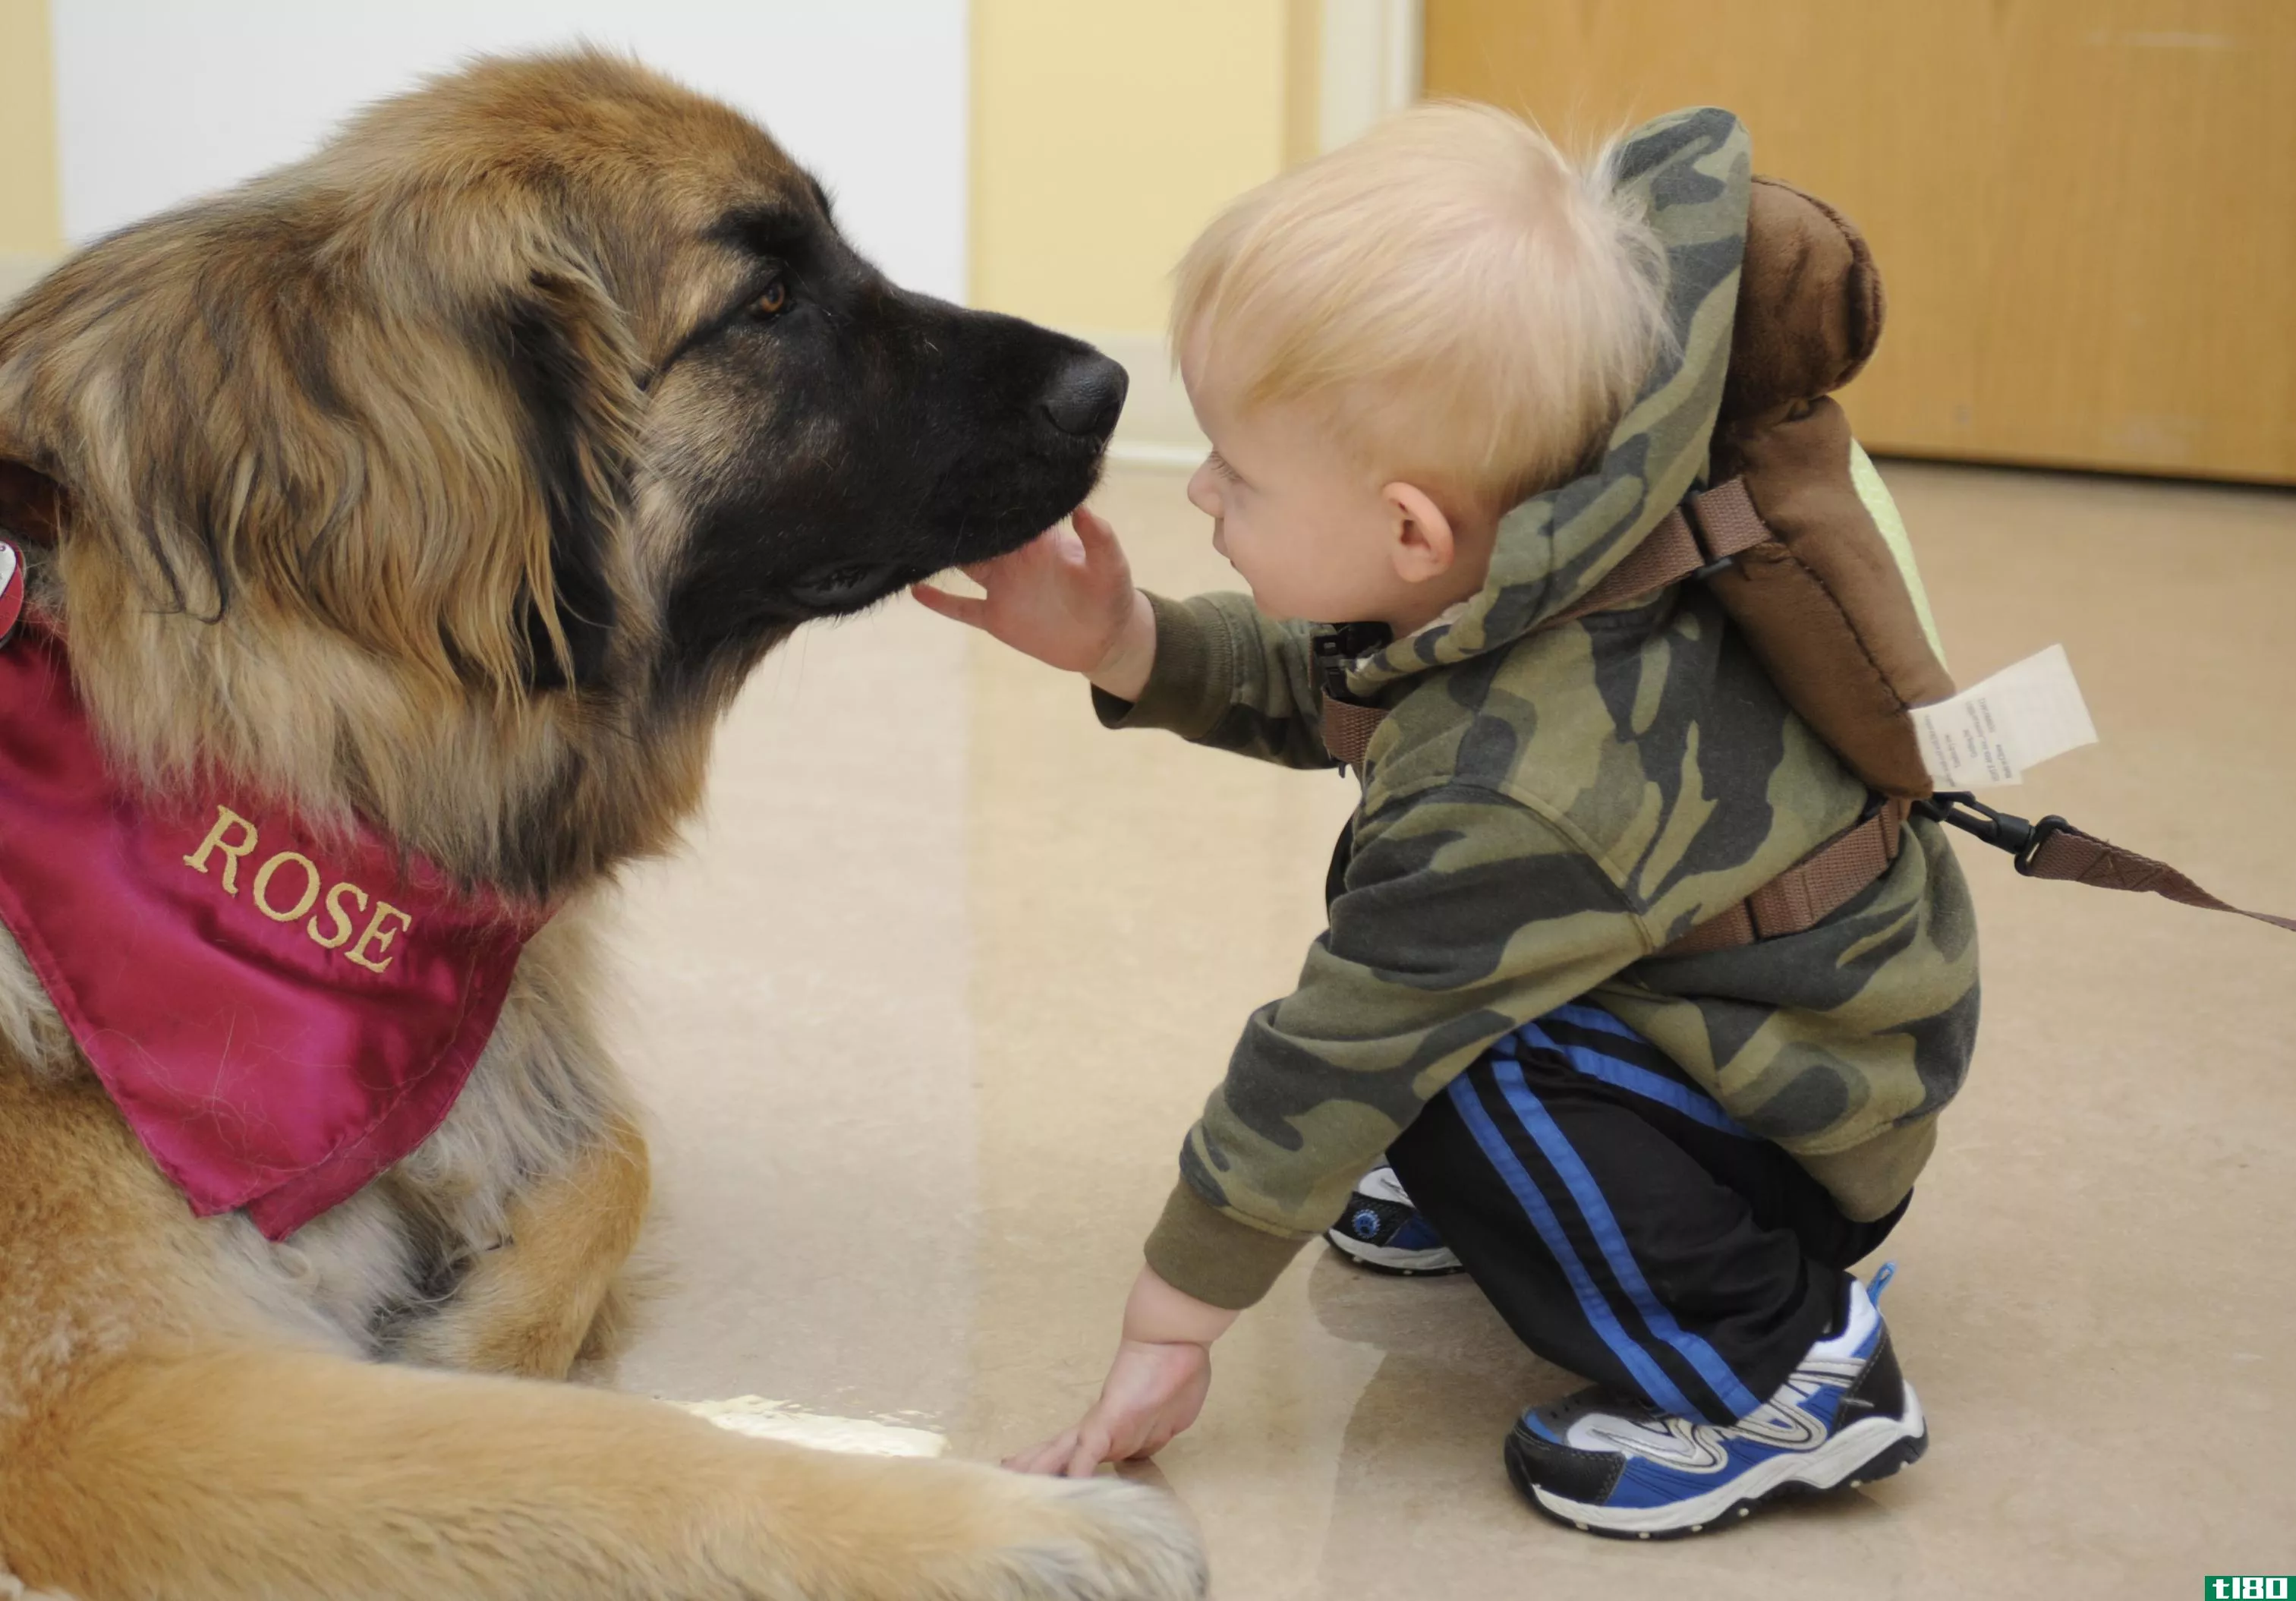 服务犬(a service dog)和治疗犬(a therapy dog)的区别